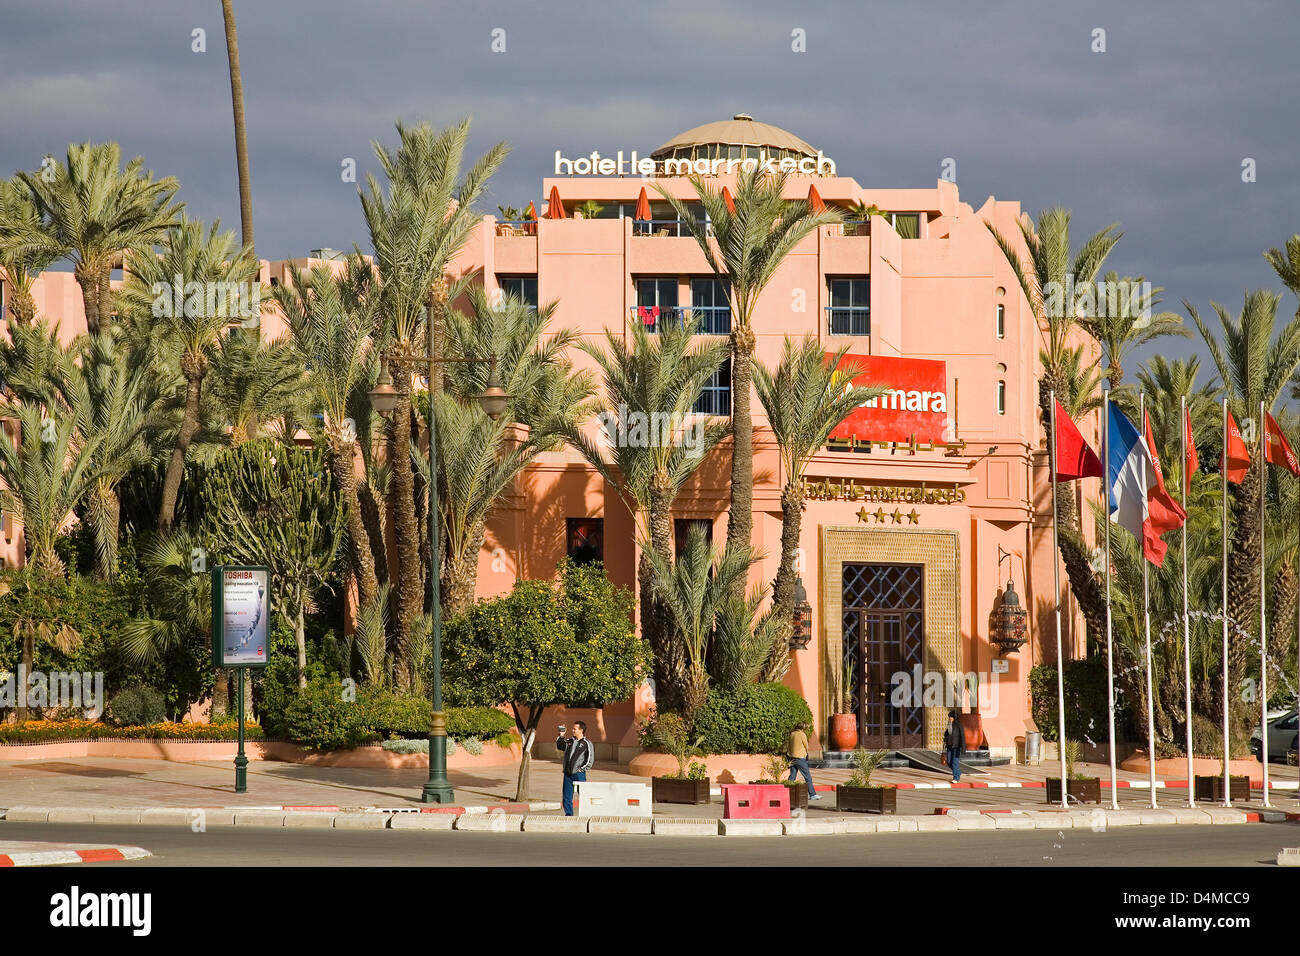 africa, morocco, marrakech, new town, hotel le marrakech Stock Photo